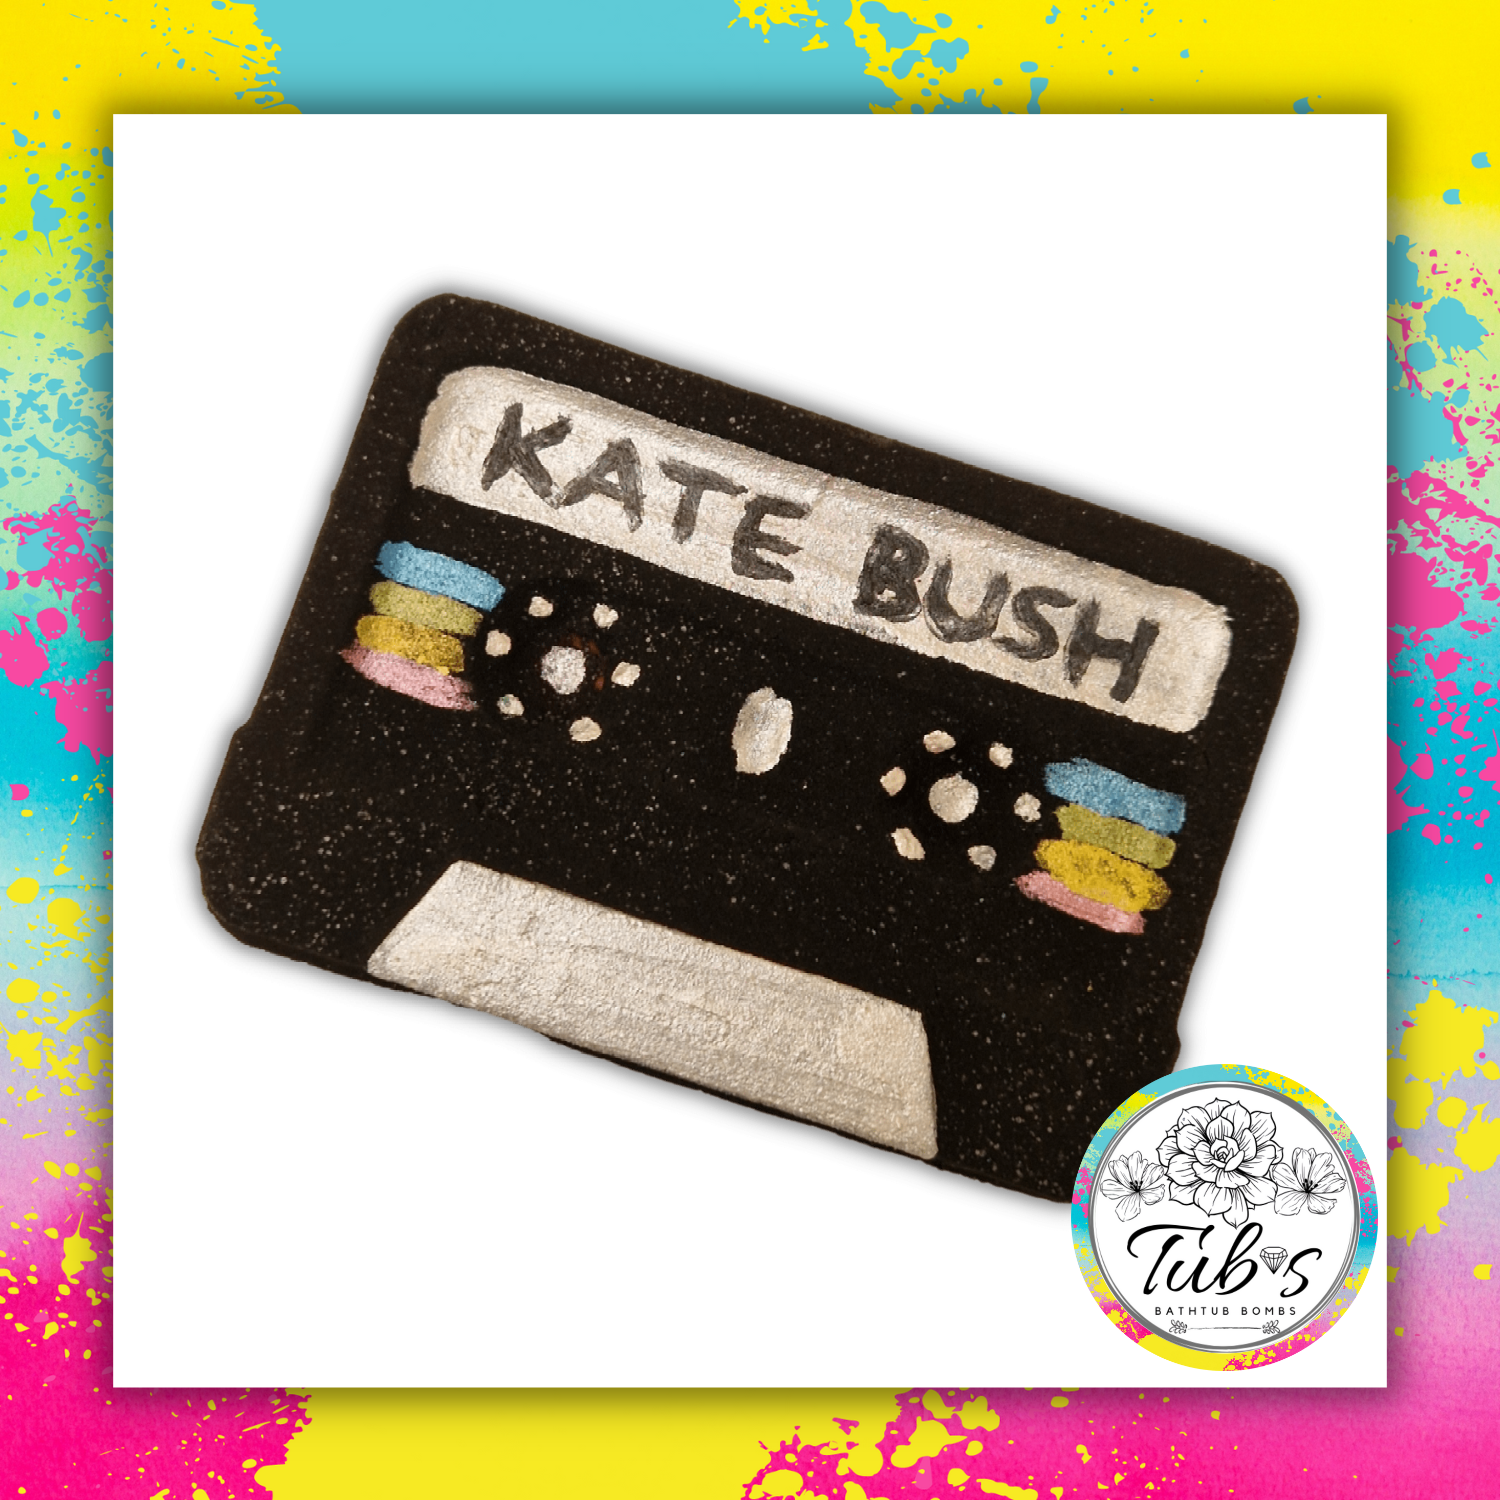 Kate Bush Cassette Tape Stranger Things Bath Bomb